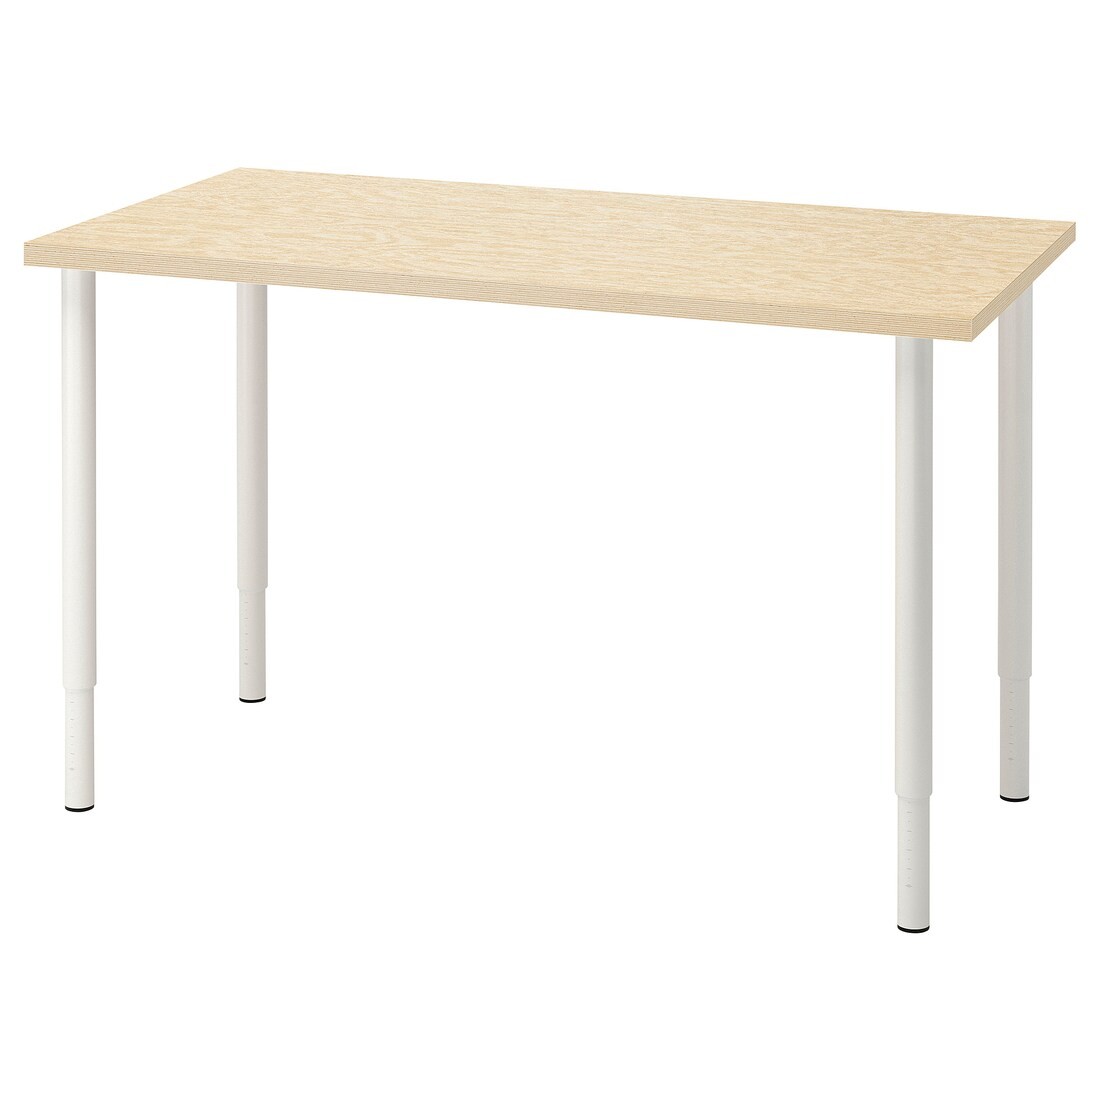 MITTCIRKEL / OLOV Письменный стол, яркий сосновый/белый эффект, 120x60 см